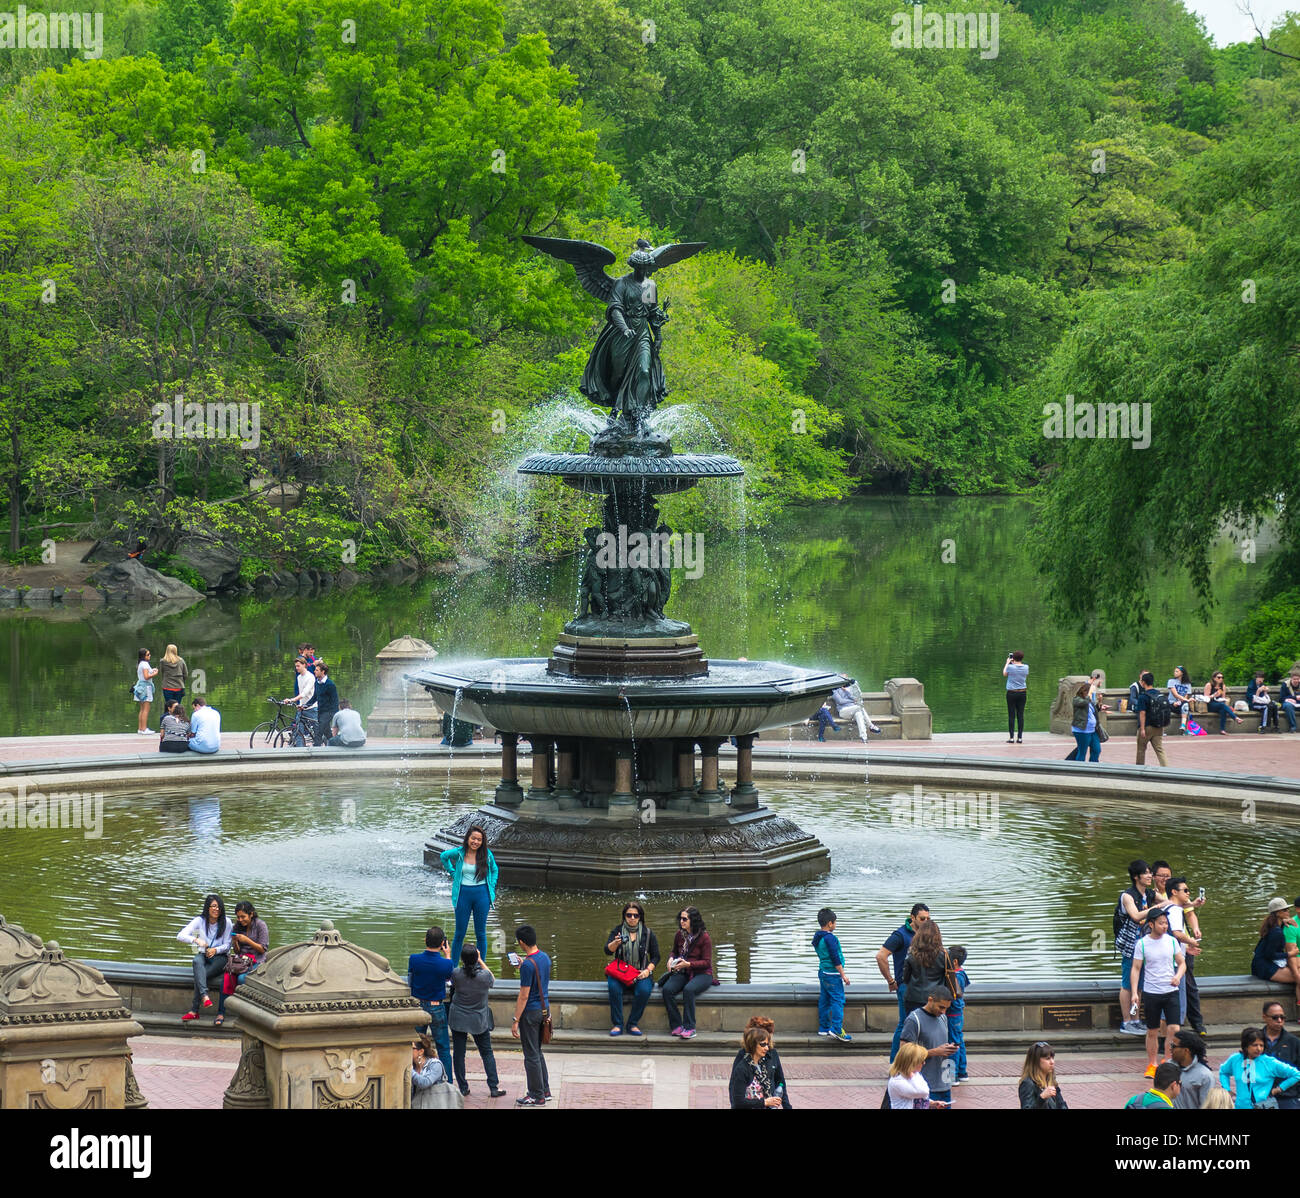 A Peek at: Bethesda Fountain